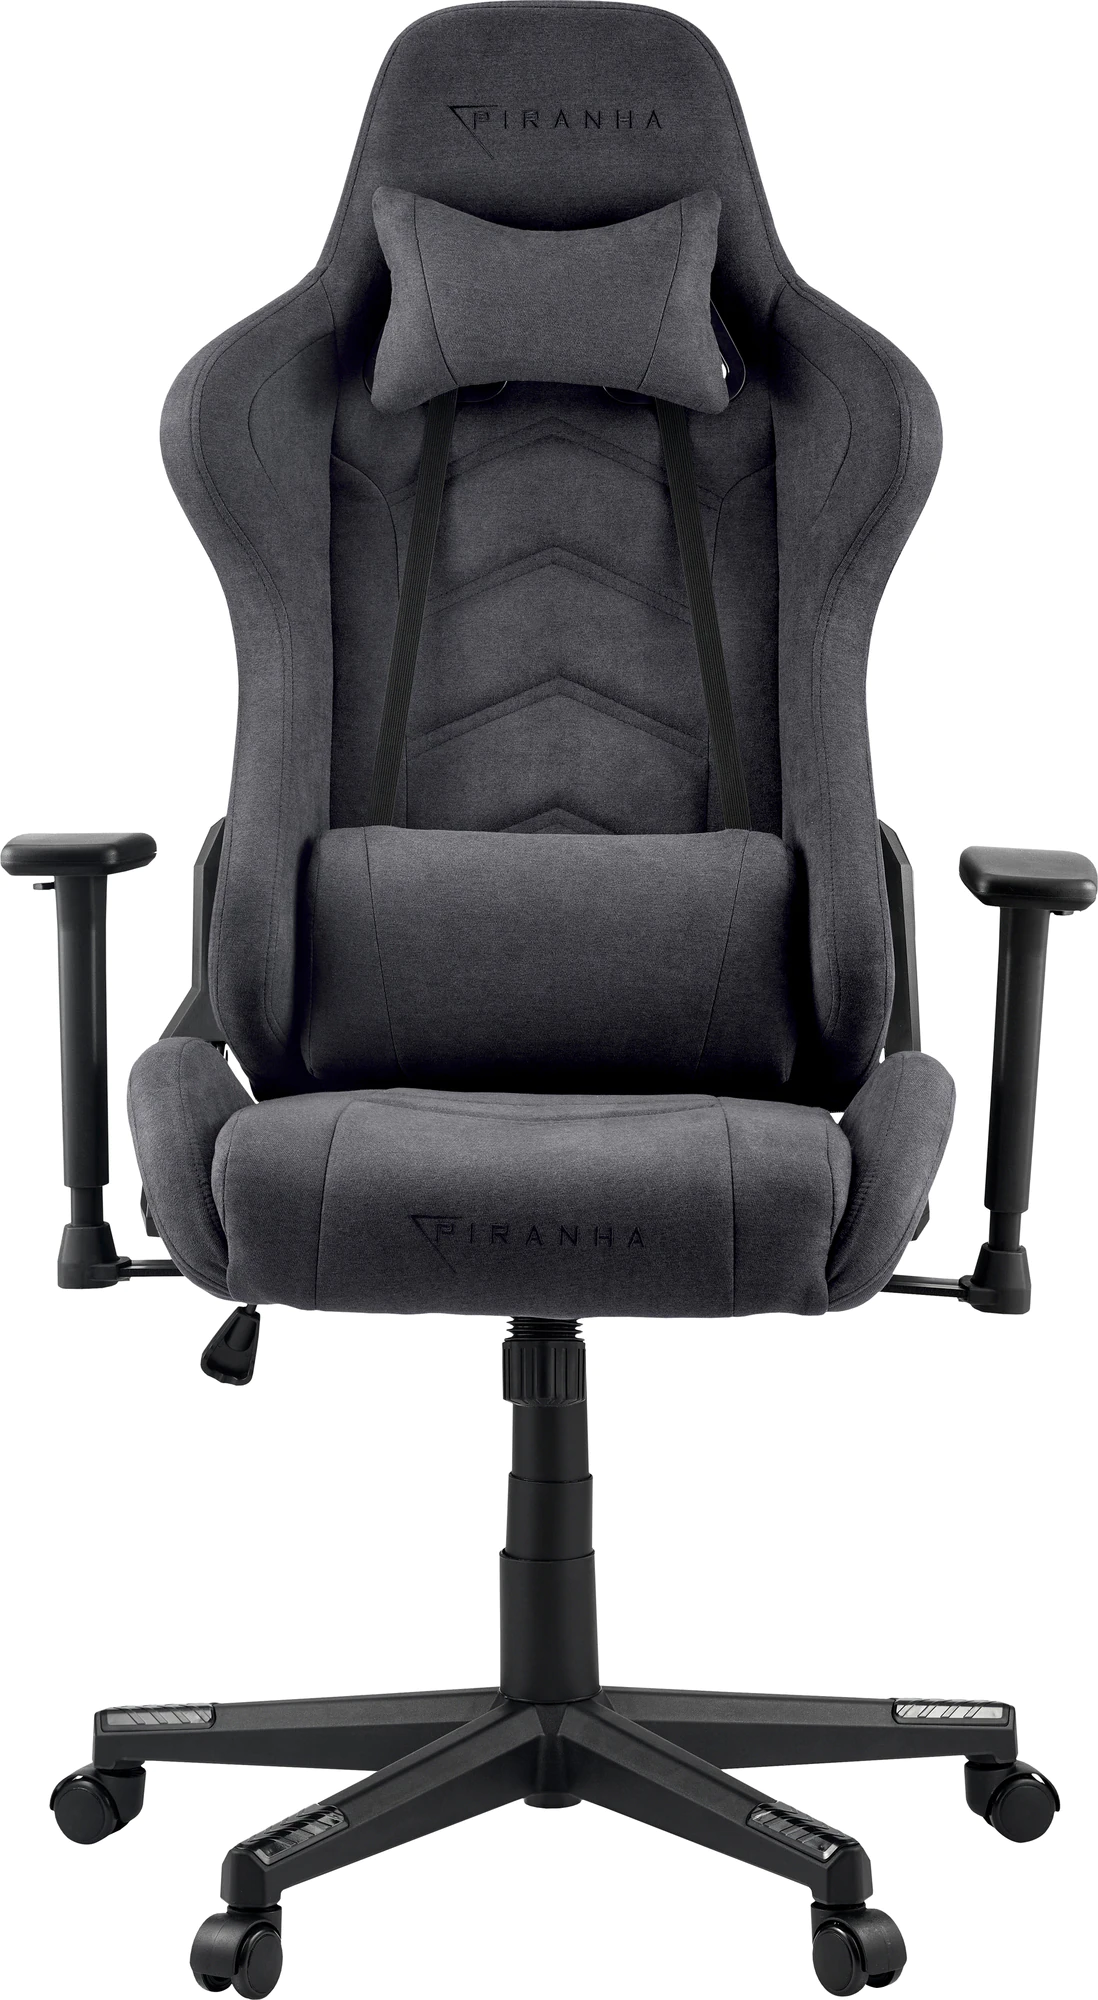  Bild på Piranha Attack V2 Gaming Chair - Cloth Edition - Light Grey gamingstol